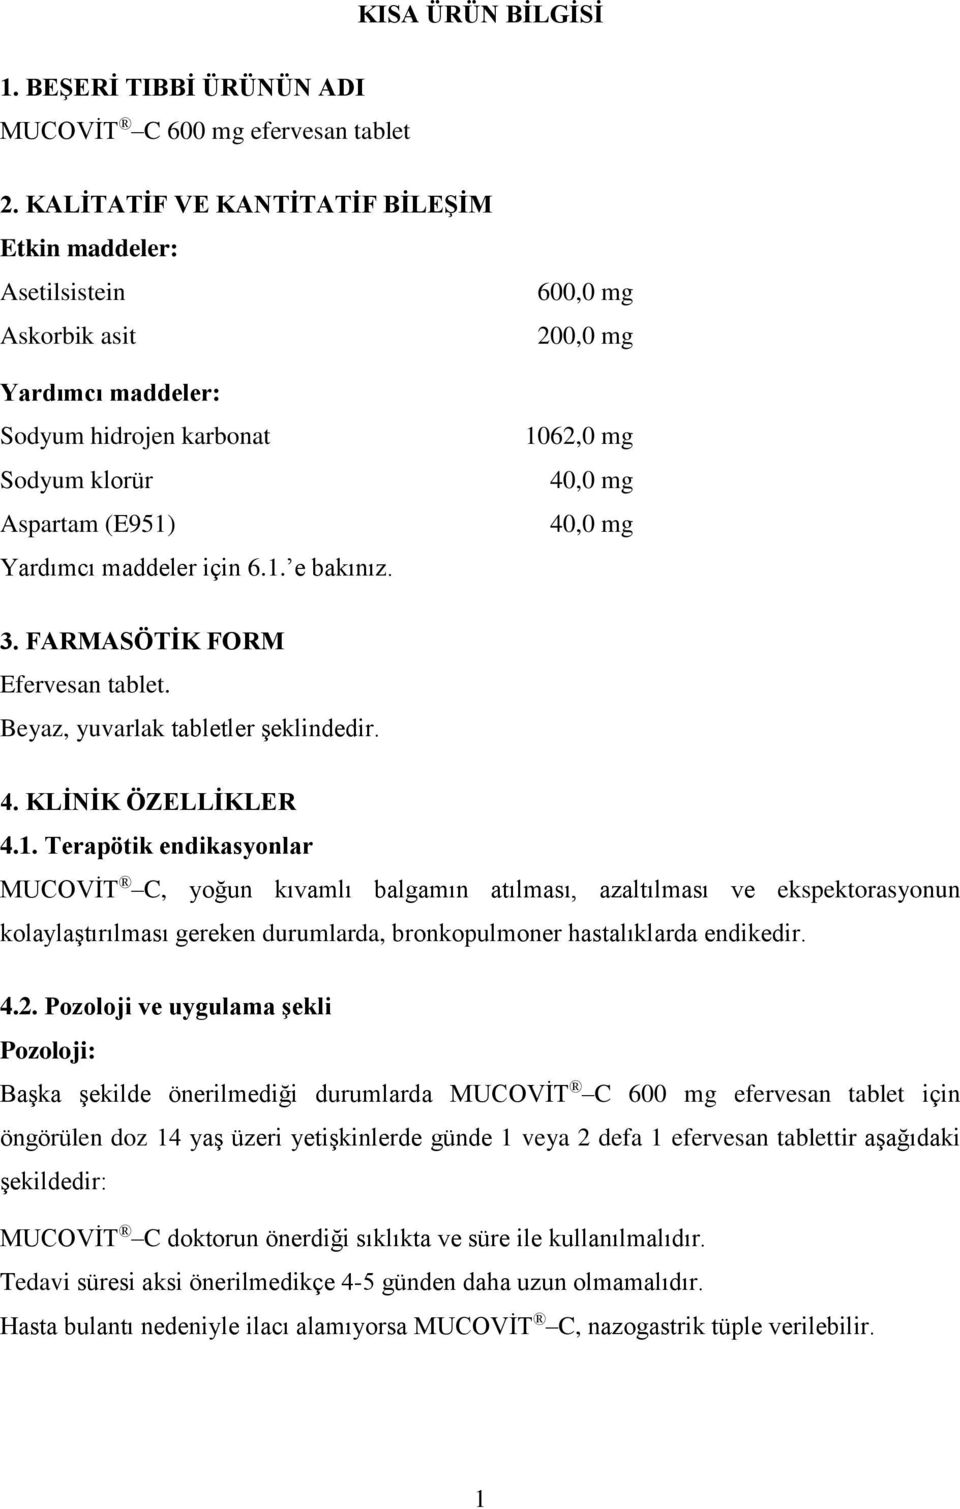 kisa urun bilgisi 1 beseri tibbi urunun adi mucovit c 600 mg efervesan tablet 2 kalitatif ve kantitatif bilesim etkin maddeler pdf free download